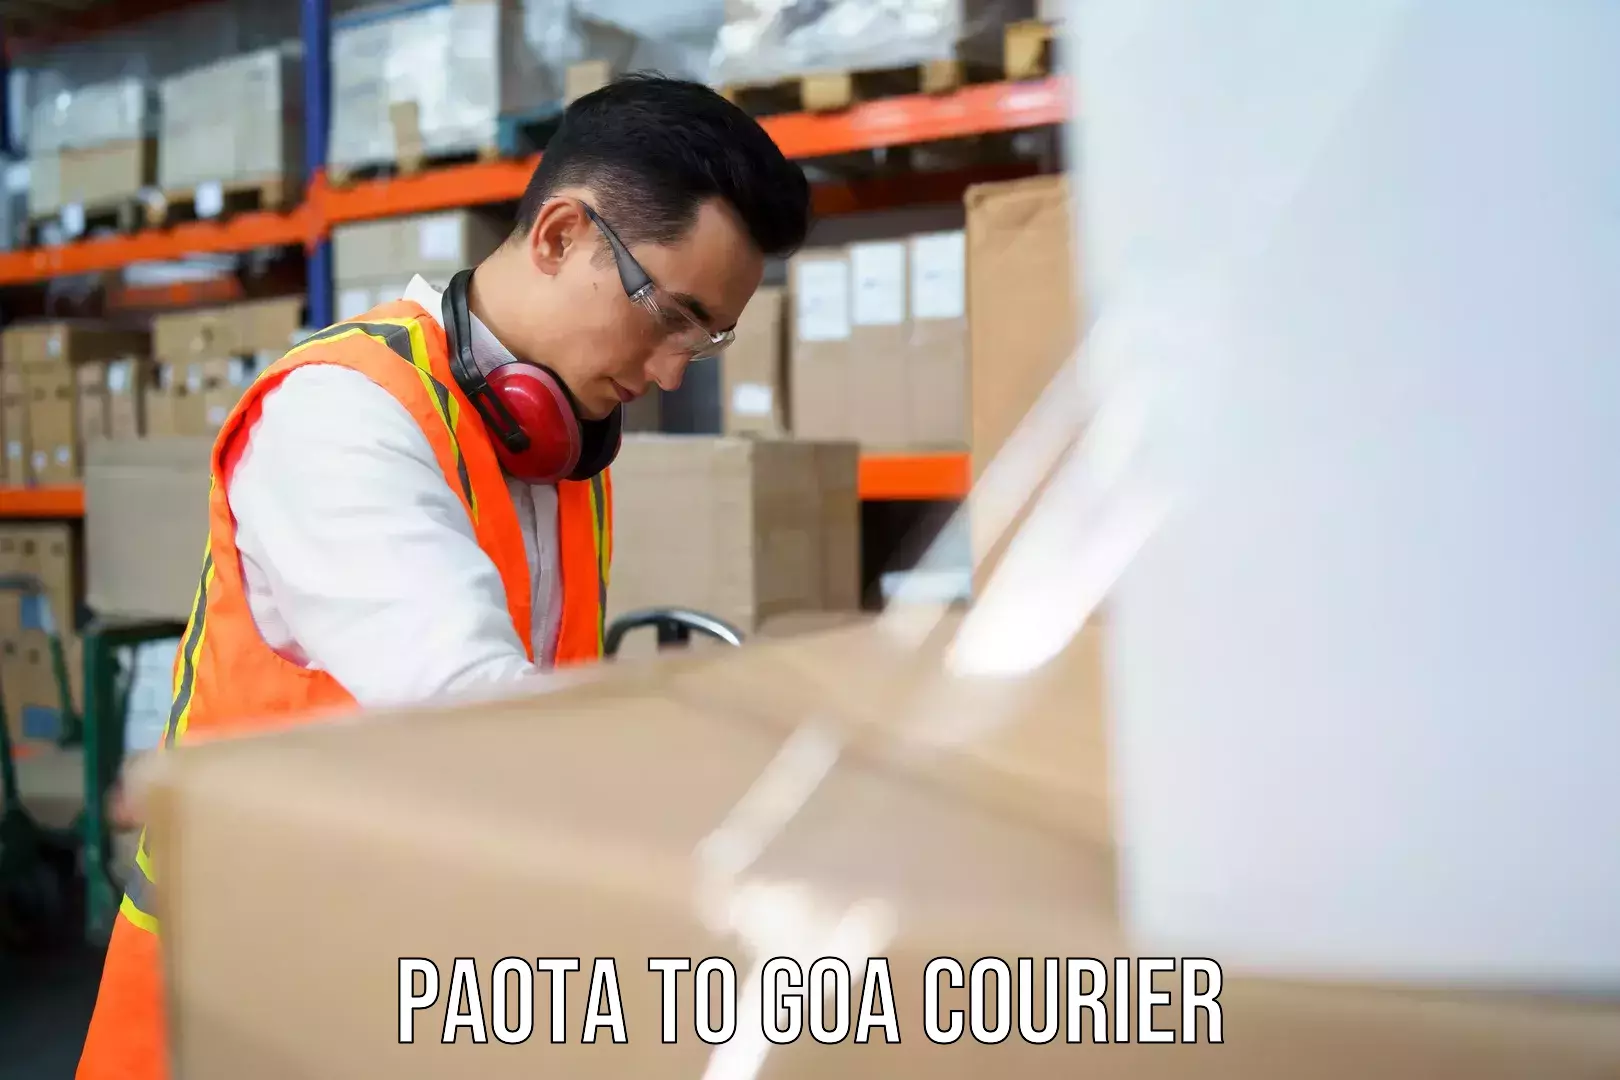 Global freight services Paota to NIT Goa